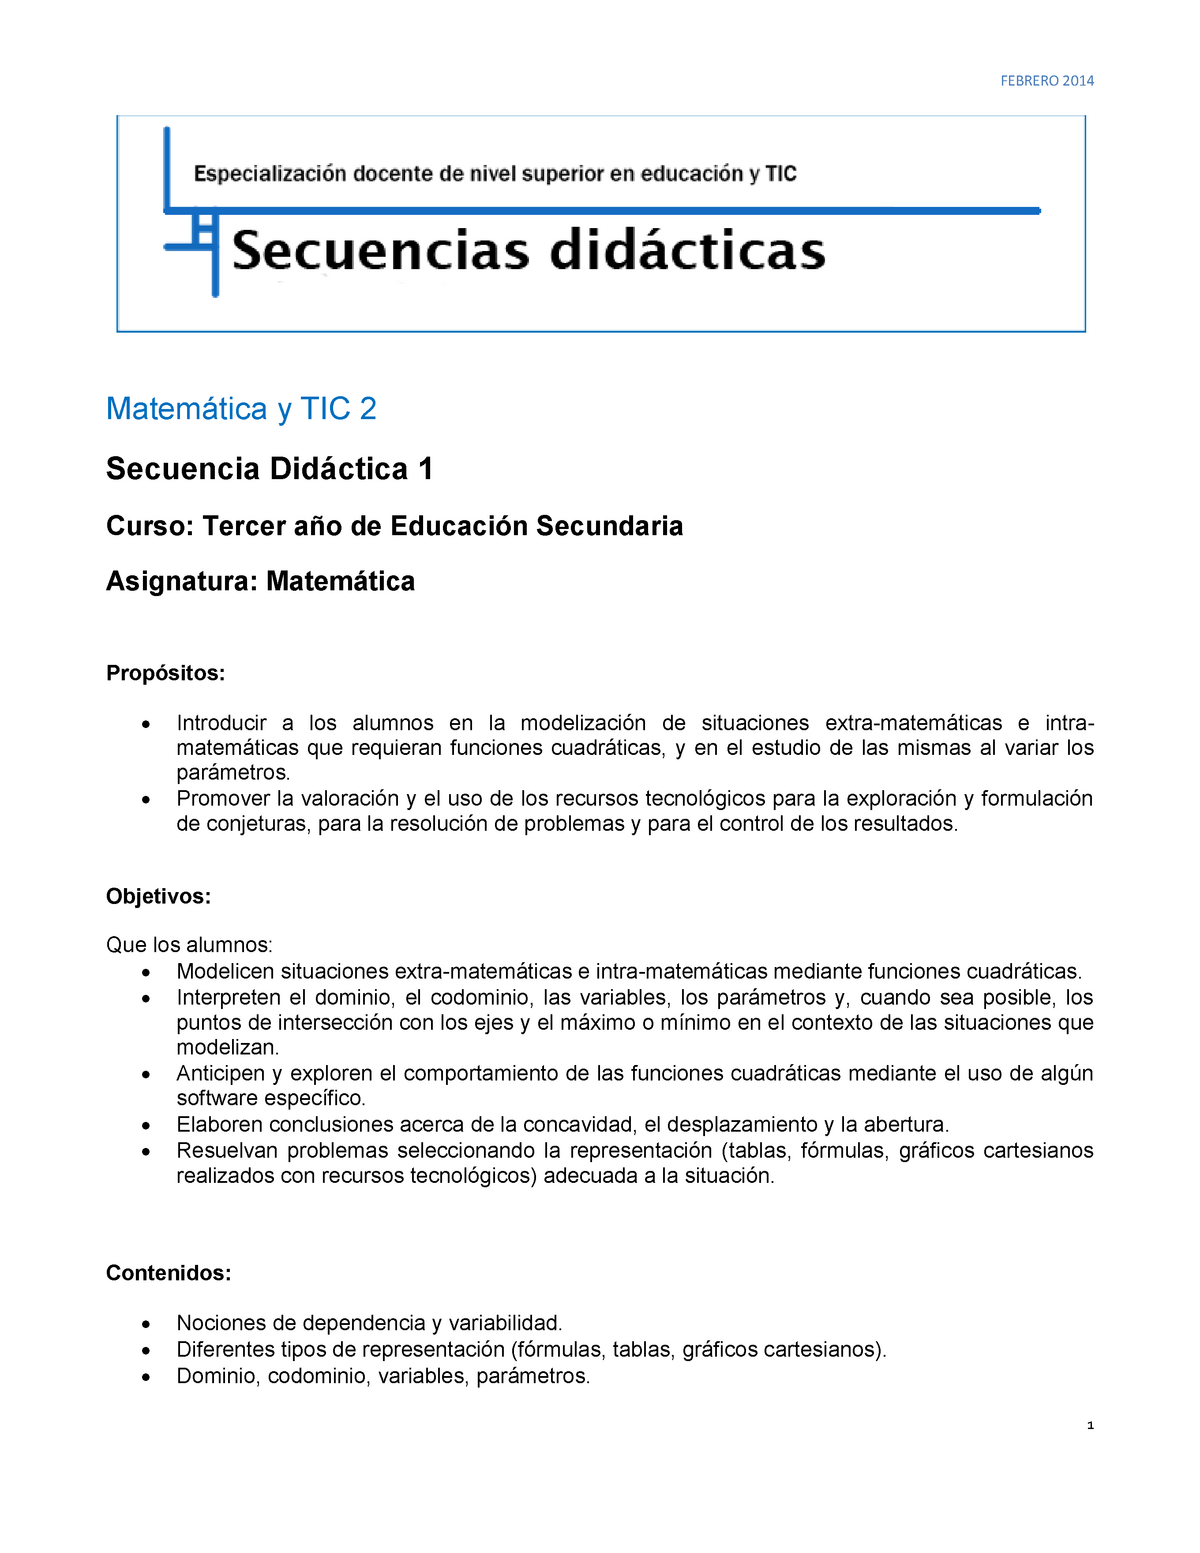 Modelo de Secuencia 1 - Funciones cuadráticas - FEBRERO 2014 Matemática y  TIC 2 Secuencia Didáctica - Studocu